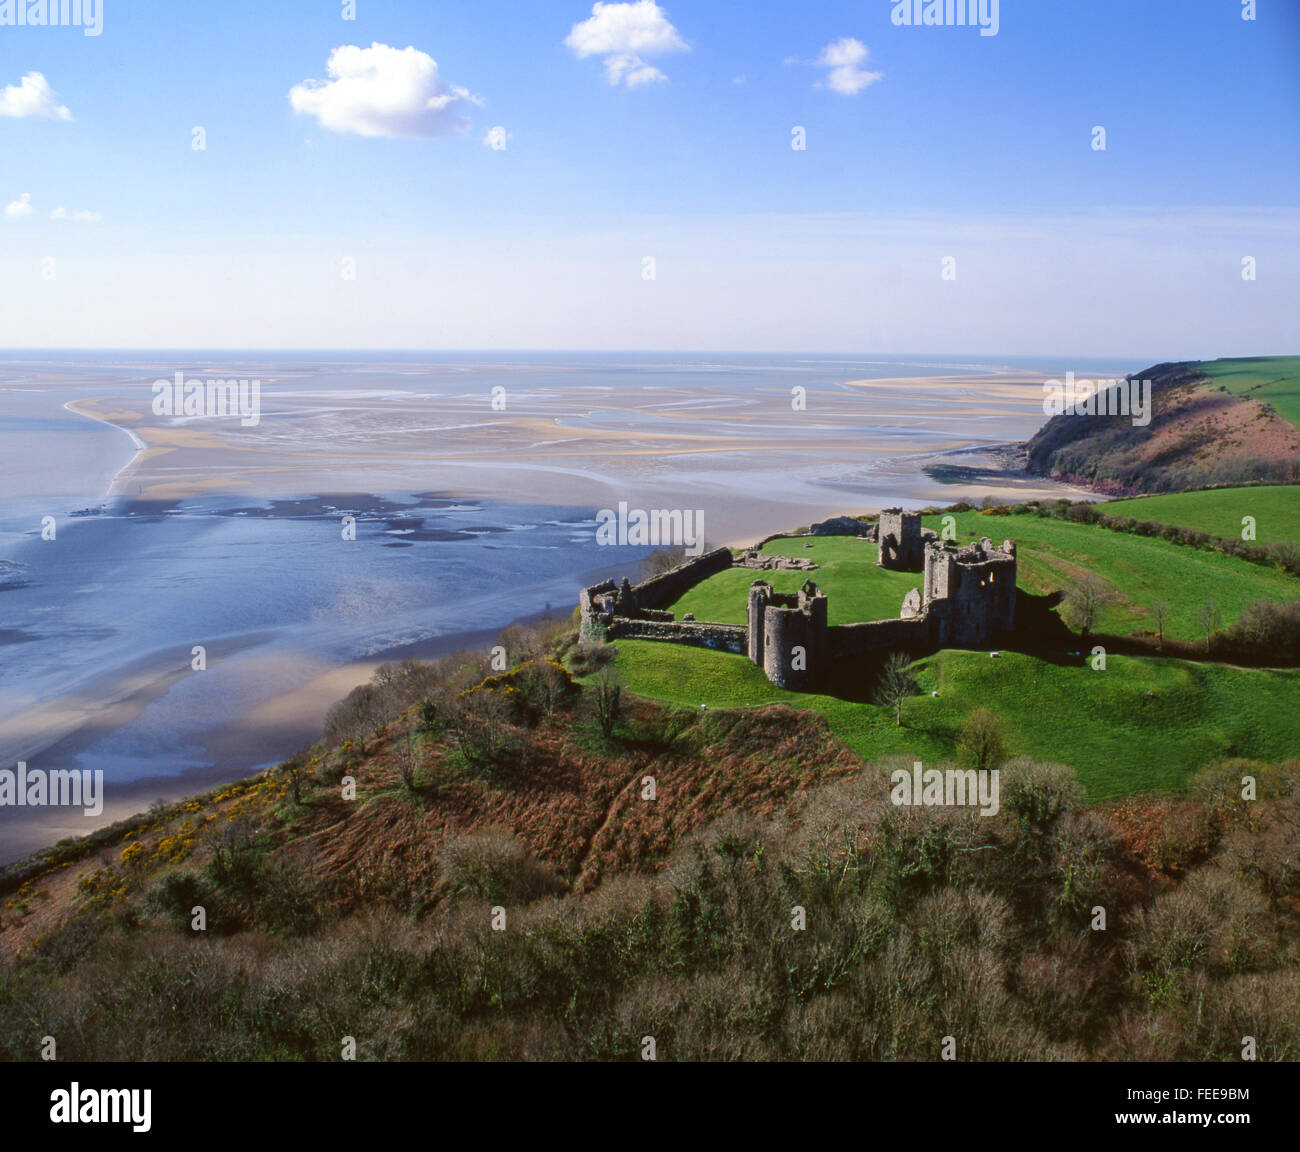 Vue aérienne Château Llansteffan Tywi Towy des sables bitumineux de l'estuaire à marée basse, la baie de Carmarthen Carmarthenshire South Wales UK Banque D'Images